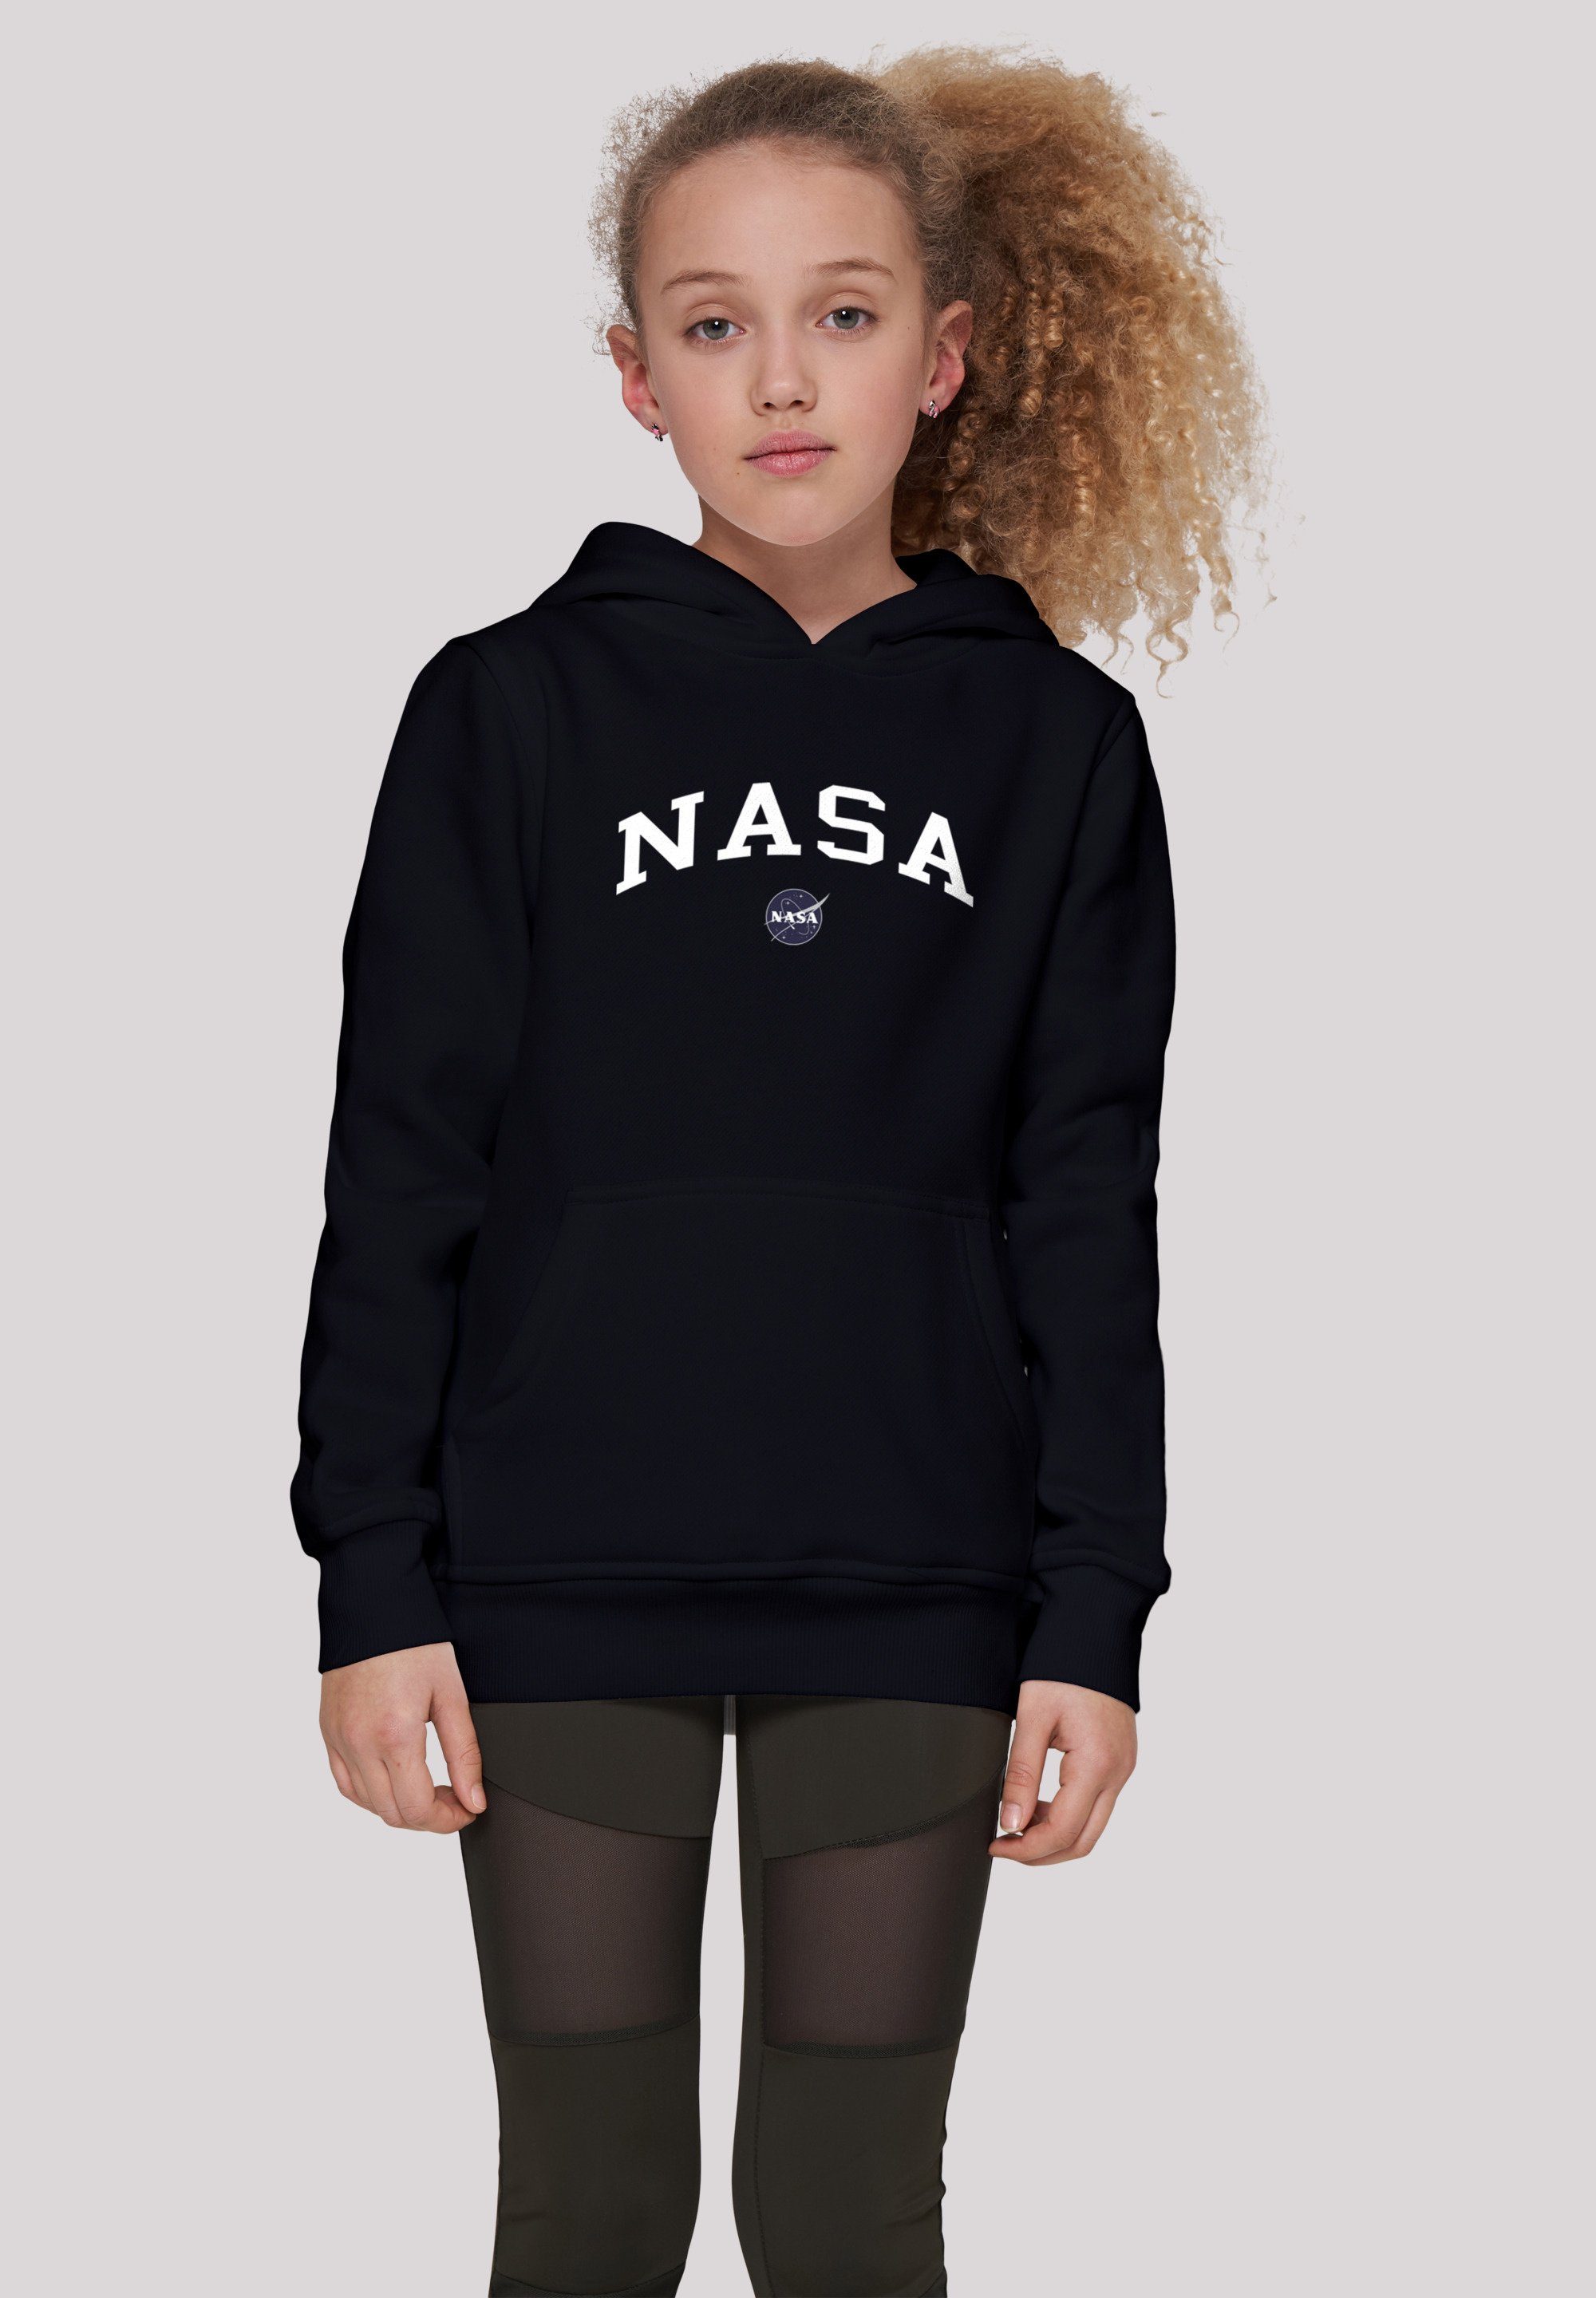 F4NT4STIC Sweatshirt NASA Collegiate Logo Unisex Kinder,Premium Merch,Jungen,Mädchen,Bedruckt